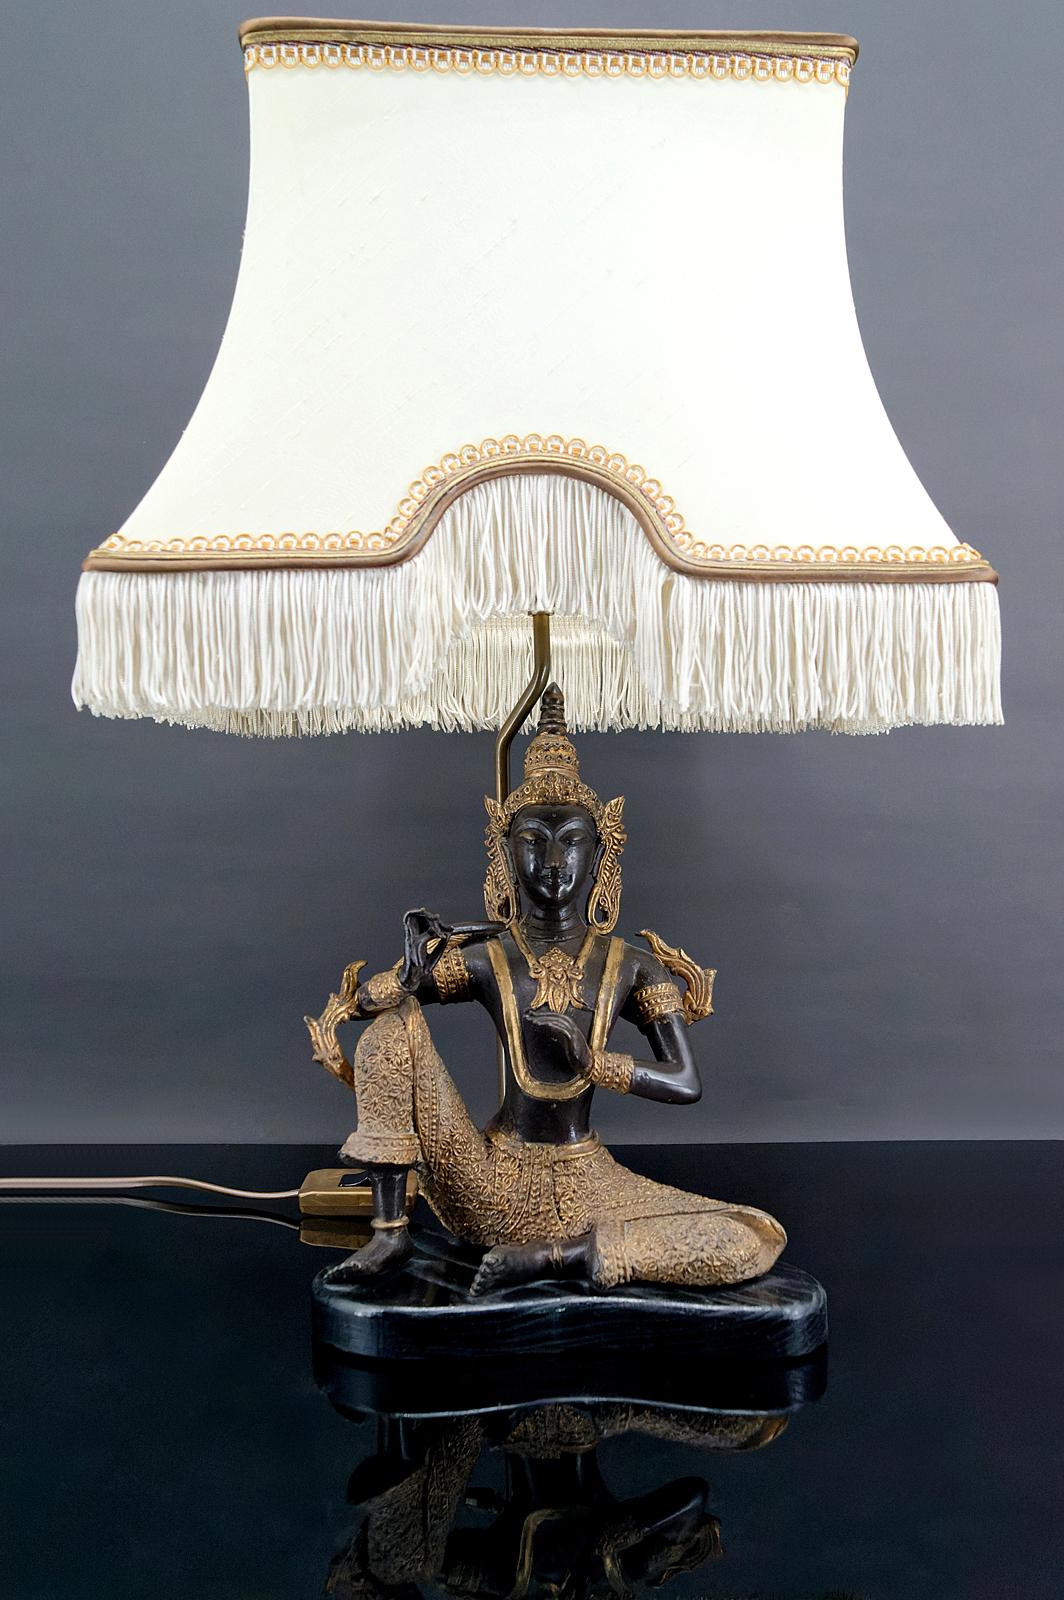 Thai-Bronze mit doppelter schwarzer und goldener Patina, montiert als Lampe auf einem geschwärzten Holzsockel.
Sehr schöner Pagoden-Lampenschirm.
Wunderschönes Werk eines französischen Dekorateurs aus den 1960er Jahren, im Stil der Produktionen von